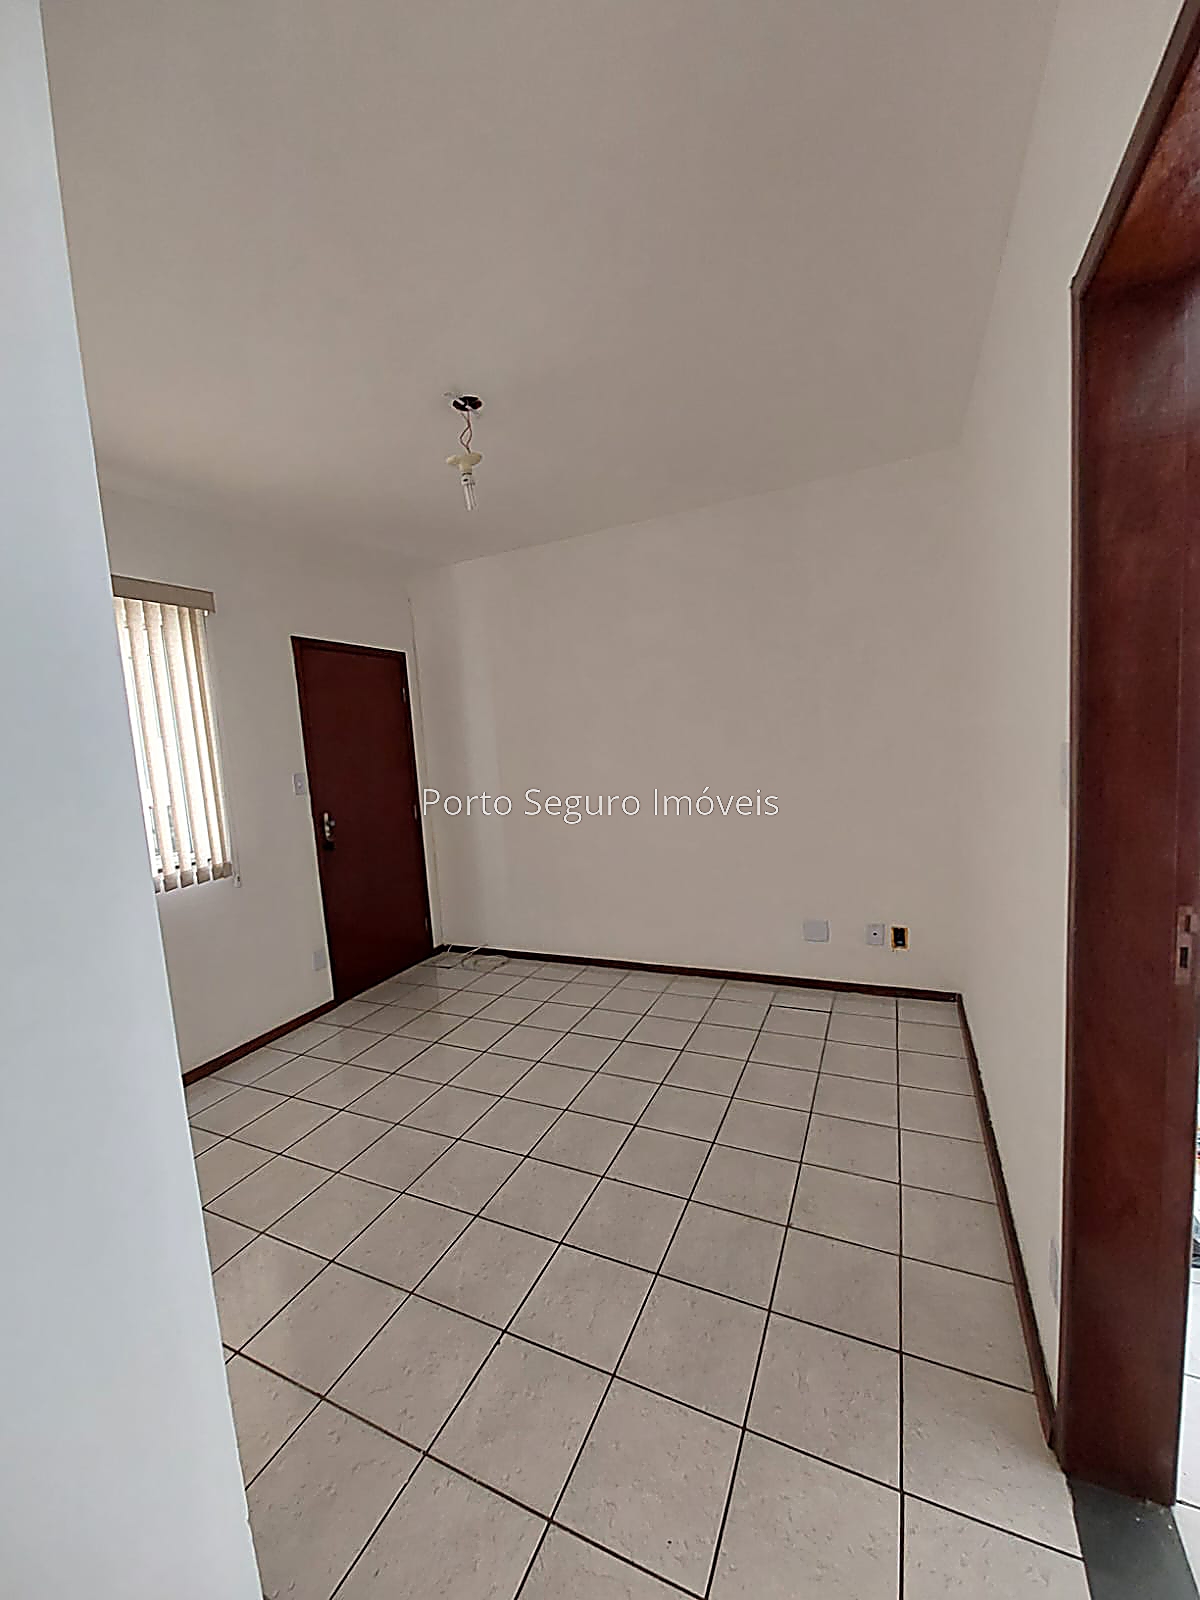 Apartamento para Alugar em Teixeiras, Juiz de Fora - MG - Foto 9